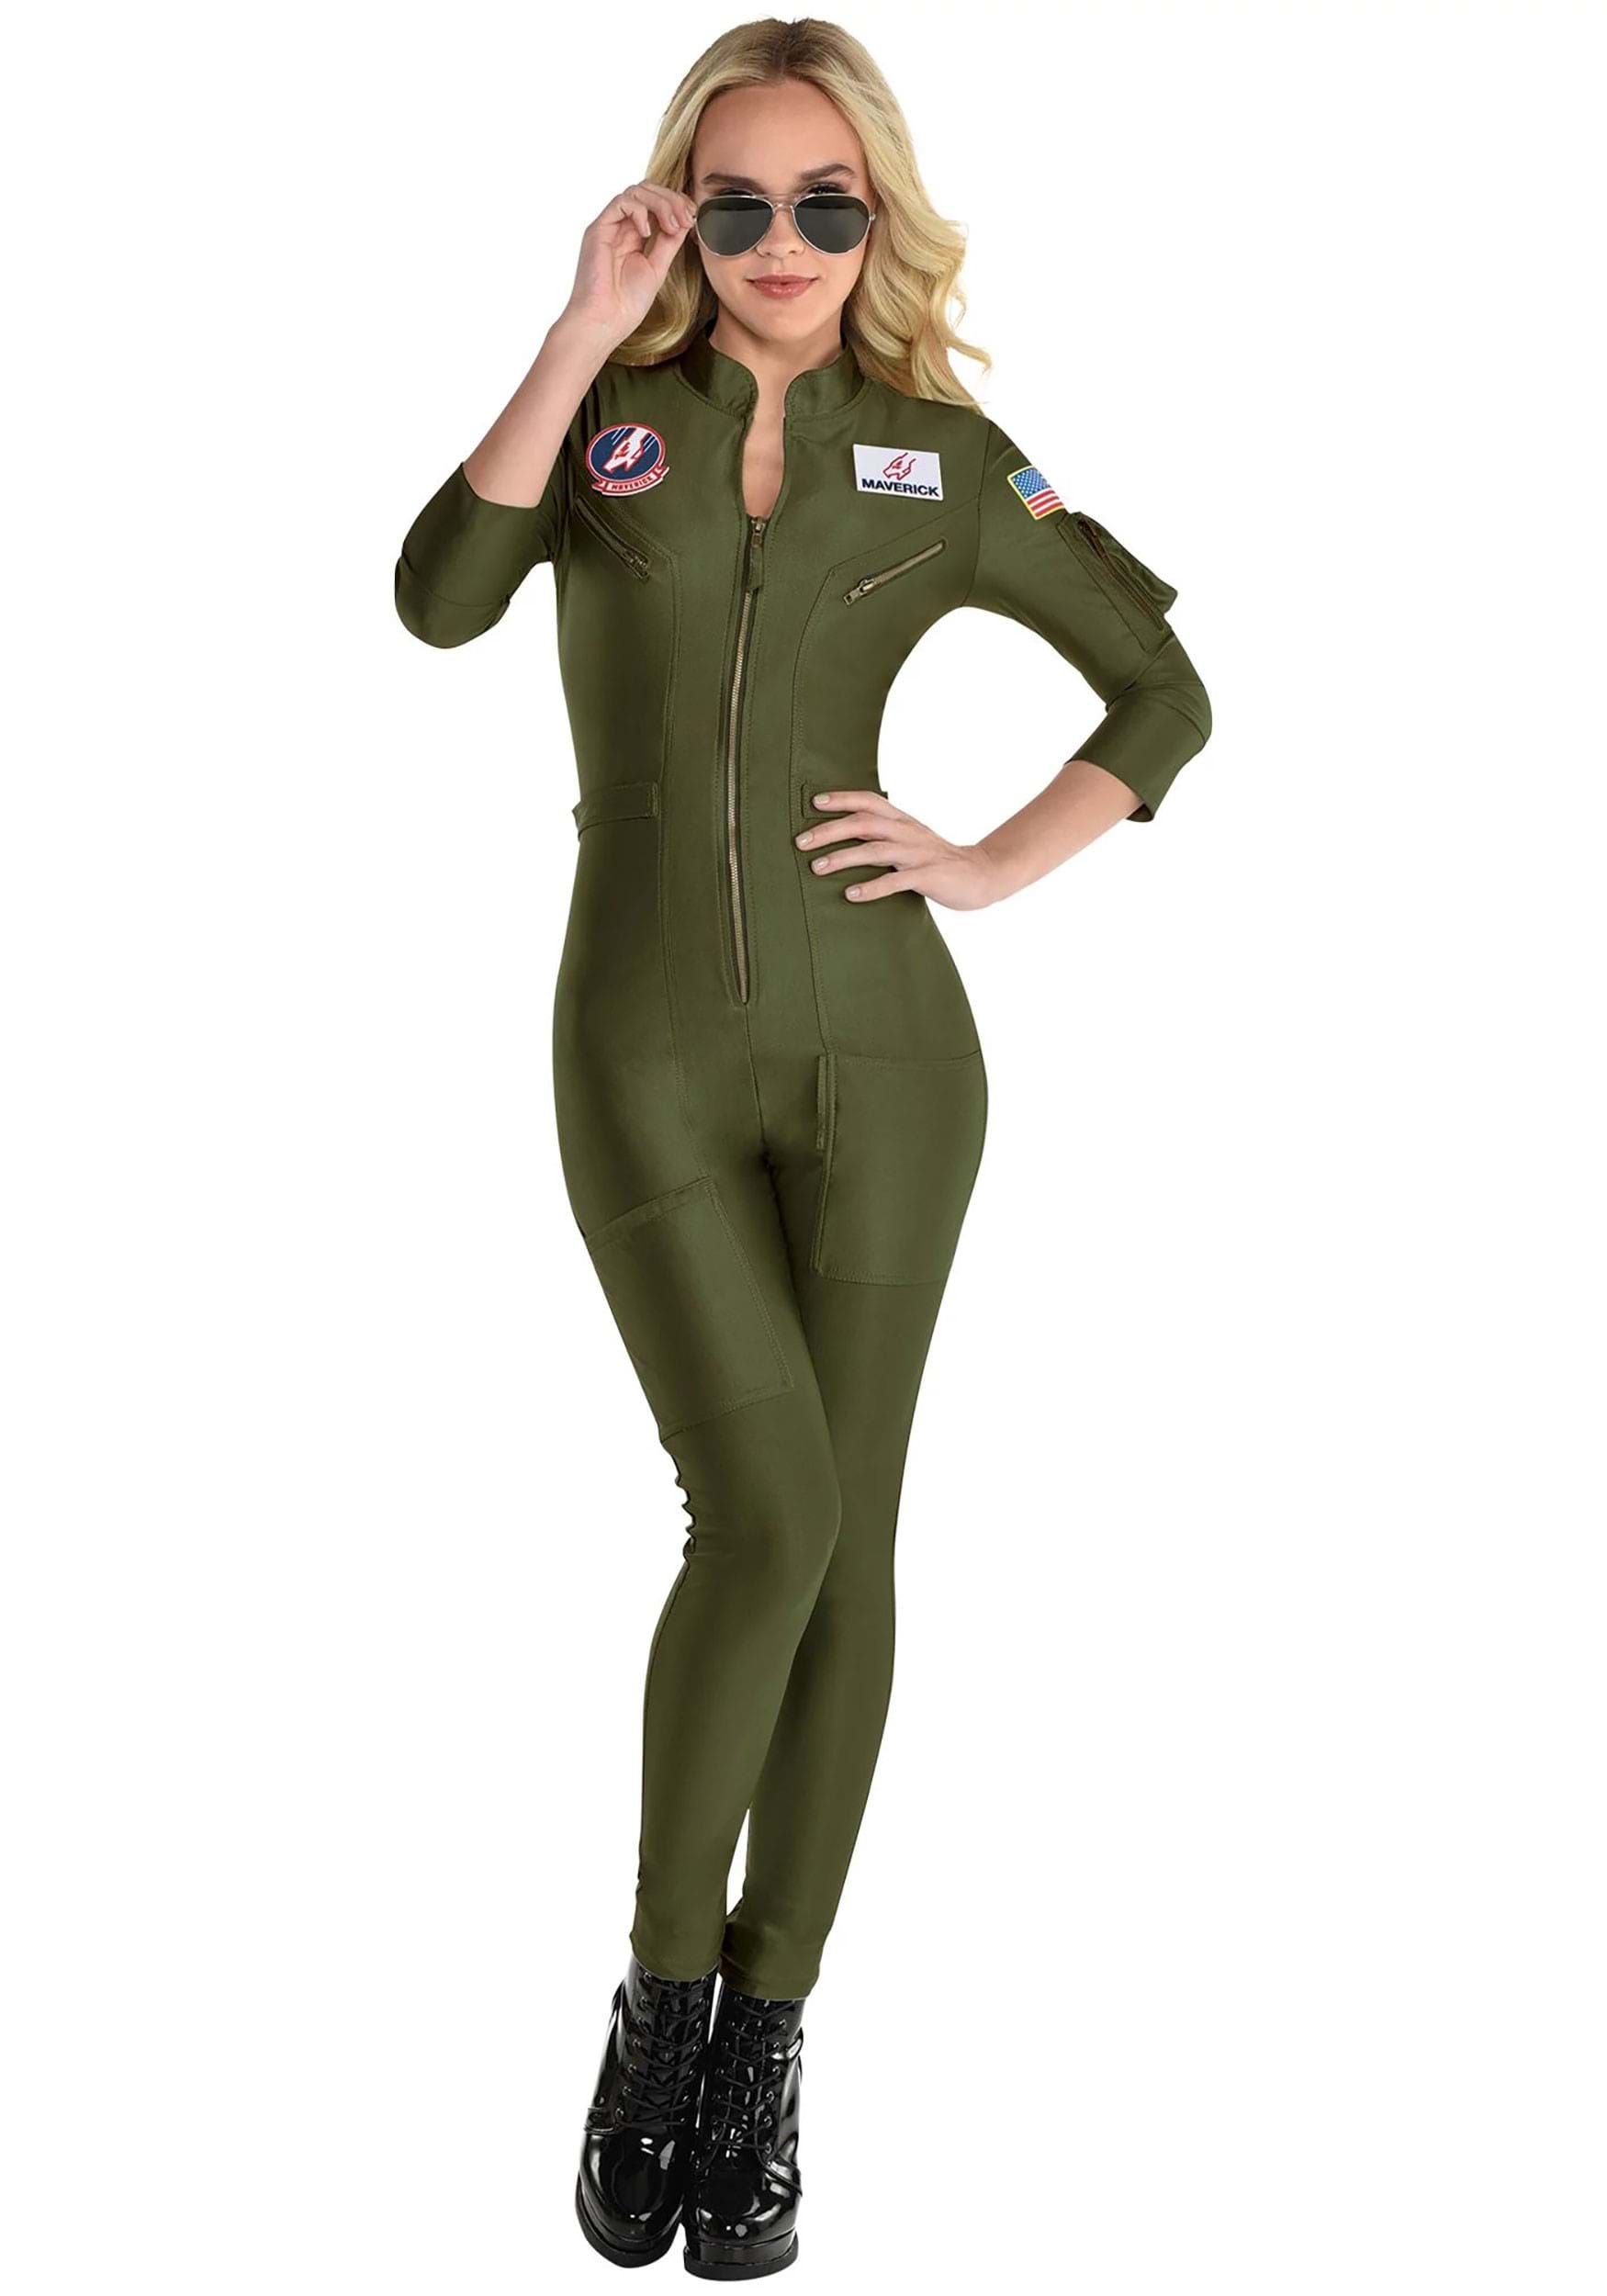 Image of Women's Top Gun 2 Flight Suit Costume ID AM8403492-M